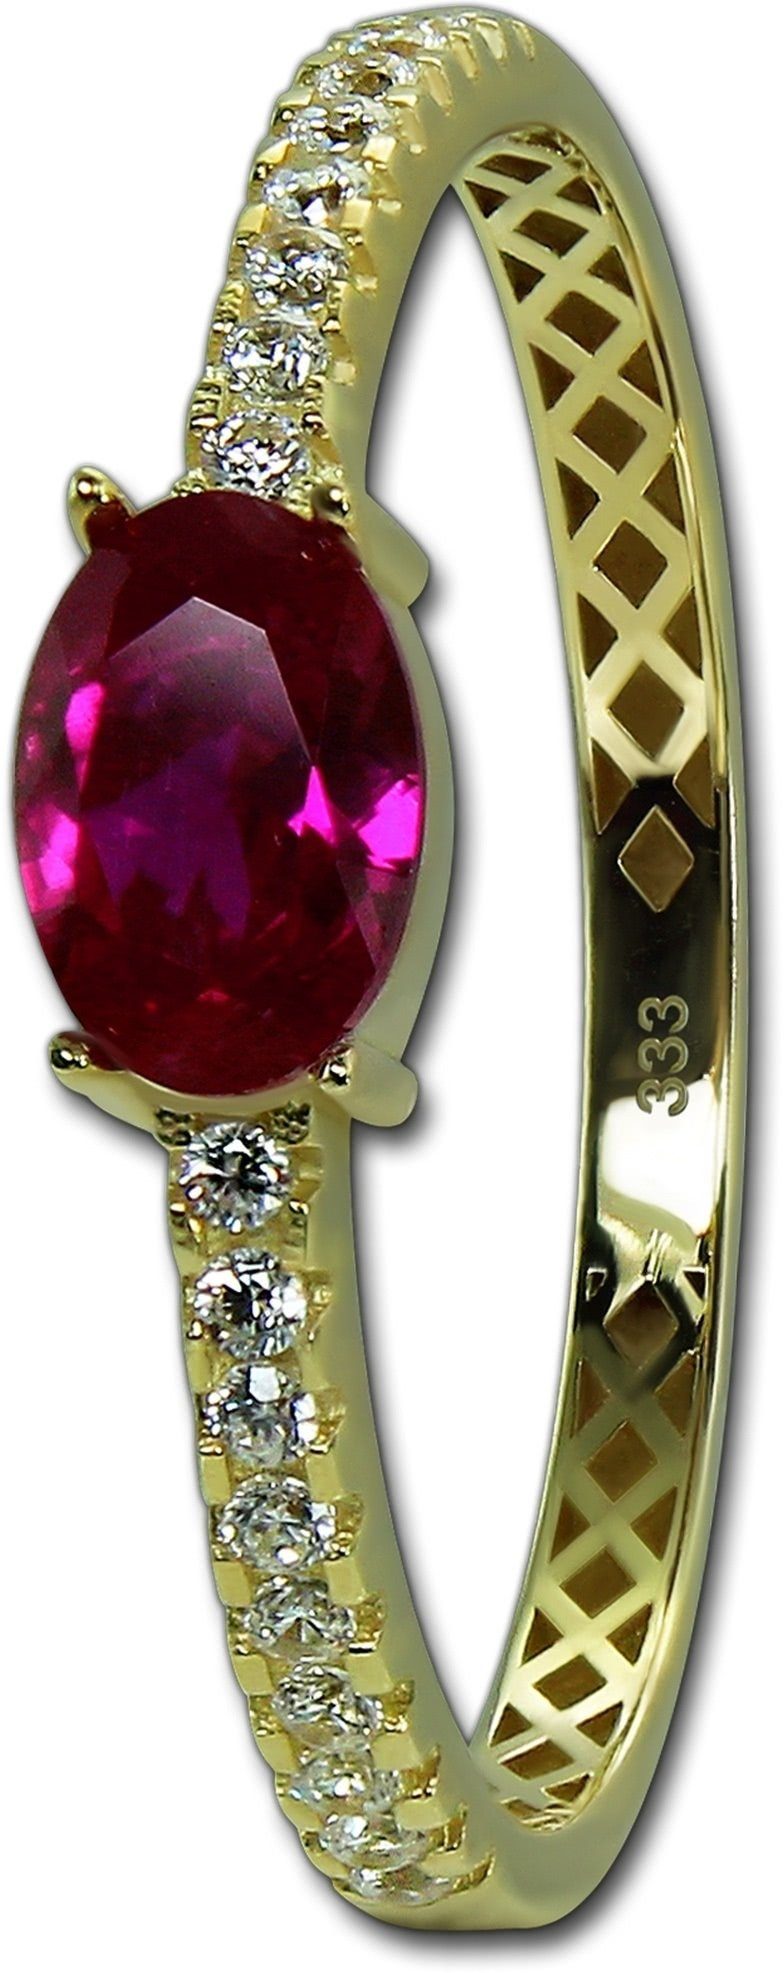 Beauty Gelbgold Ring gold, (Fingerring), GoldDream 333er Damen Goldring weiß, Gold pink Ring Beauty GoldDream Gr.58 Echtgold,